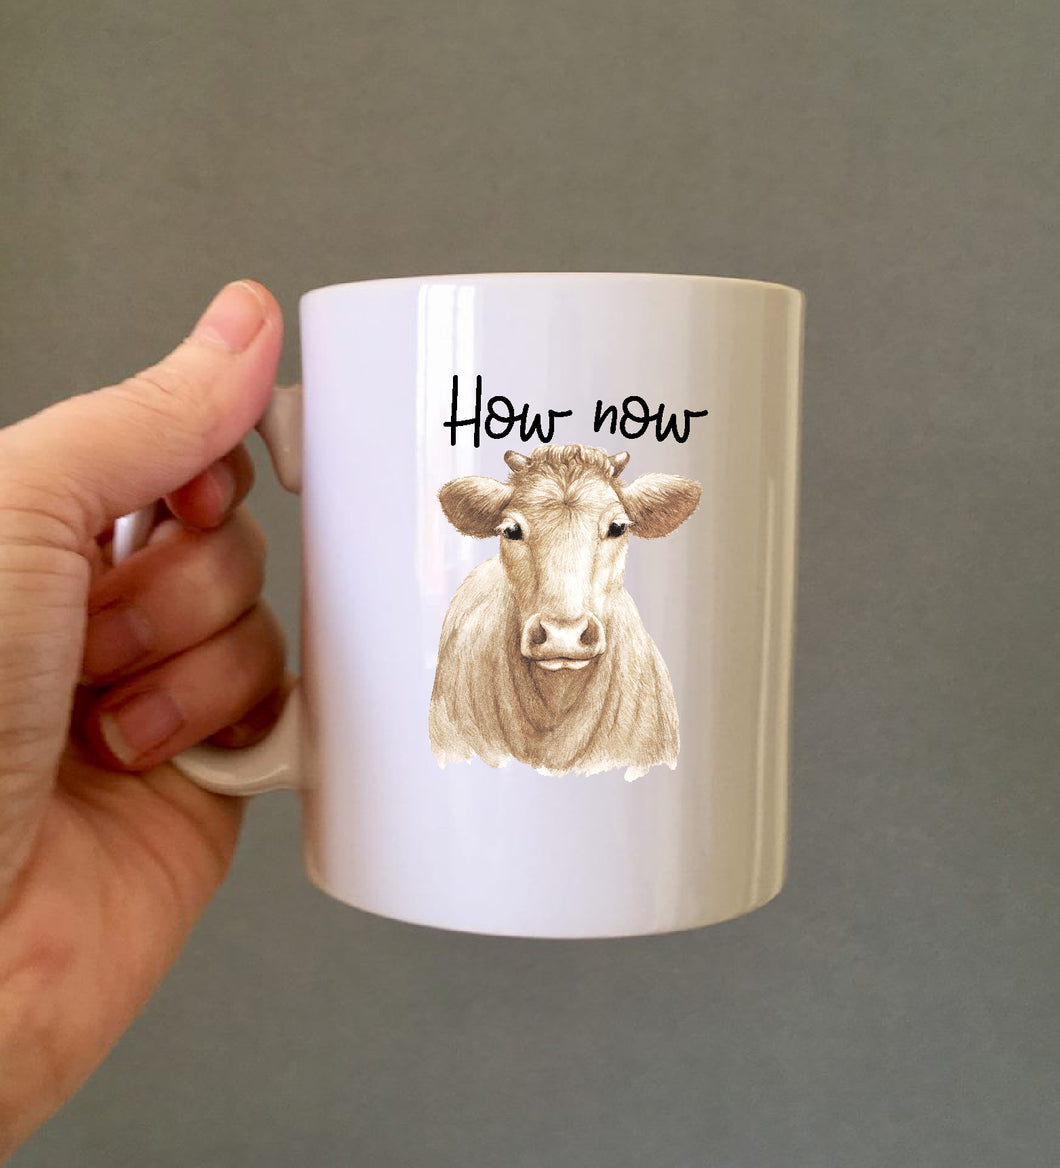 How now brown cow ceramic mug